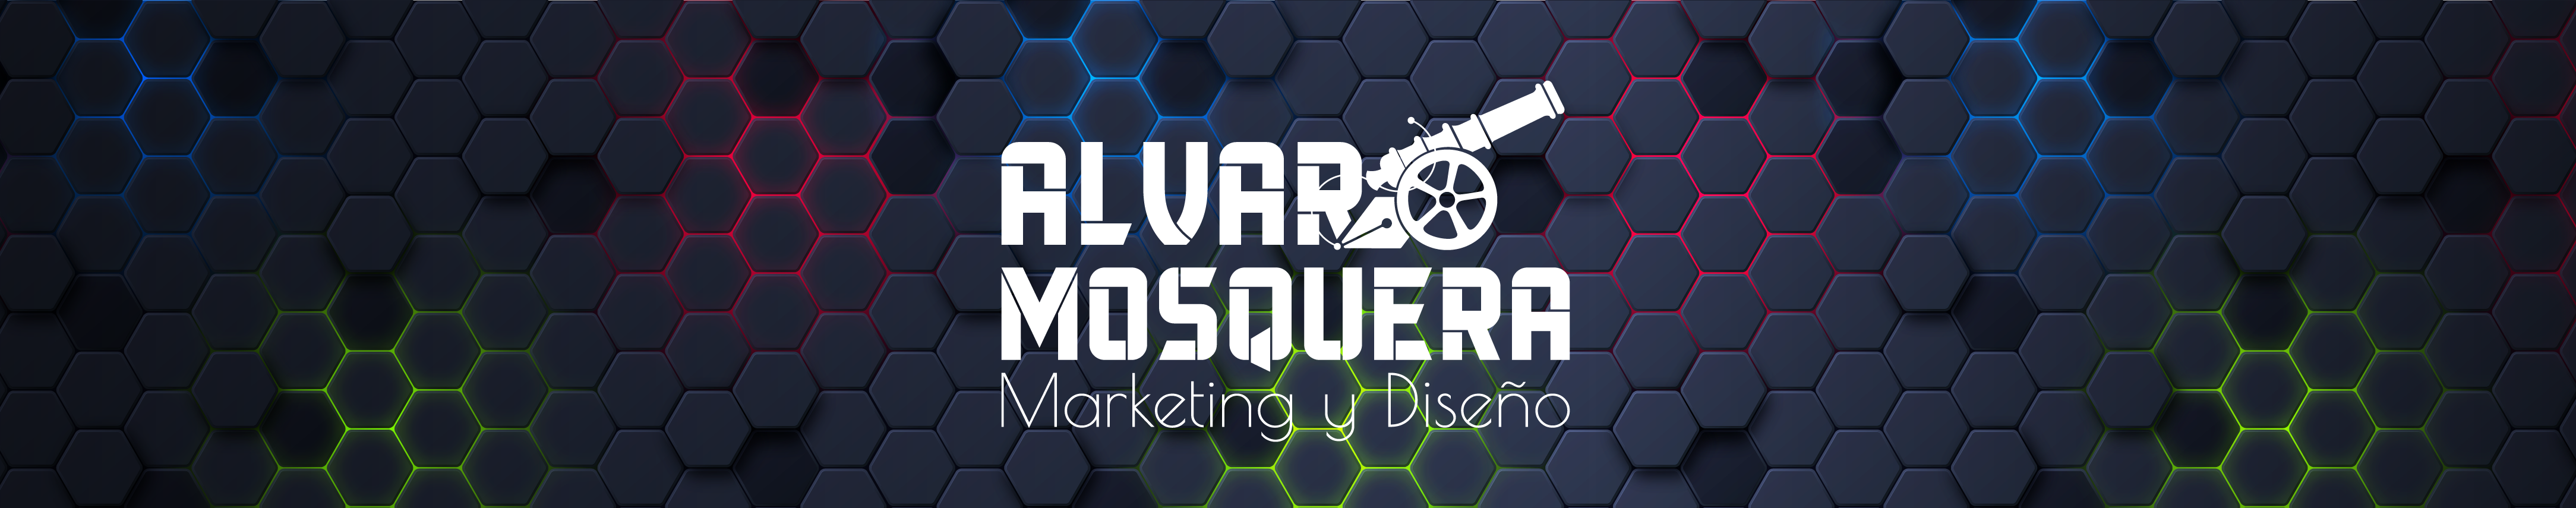 Alvaro A Mosquera E's profile banner